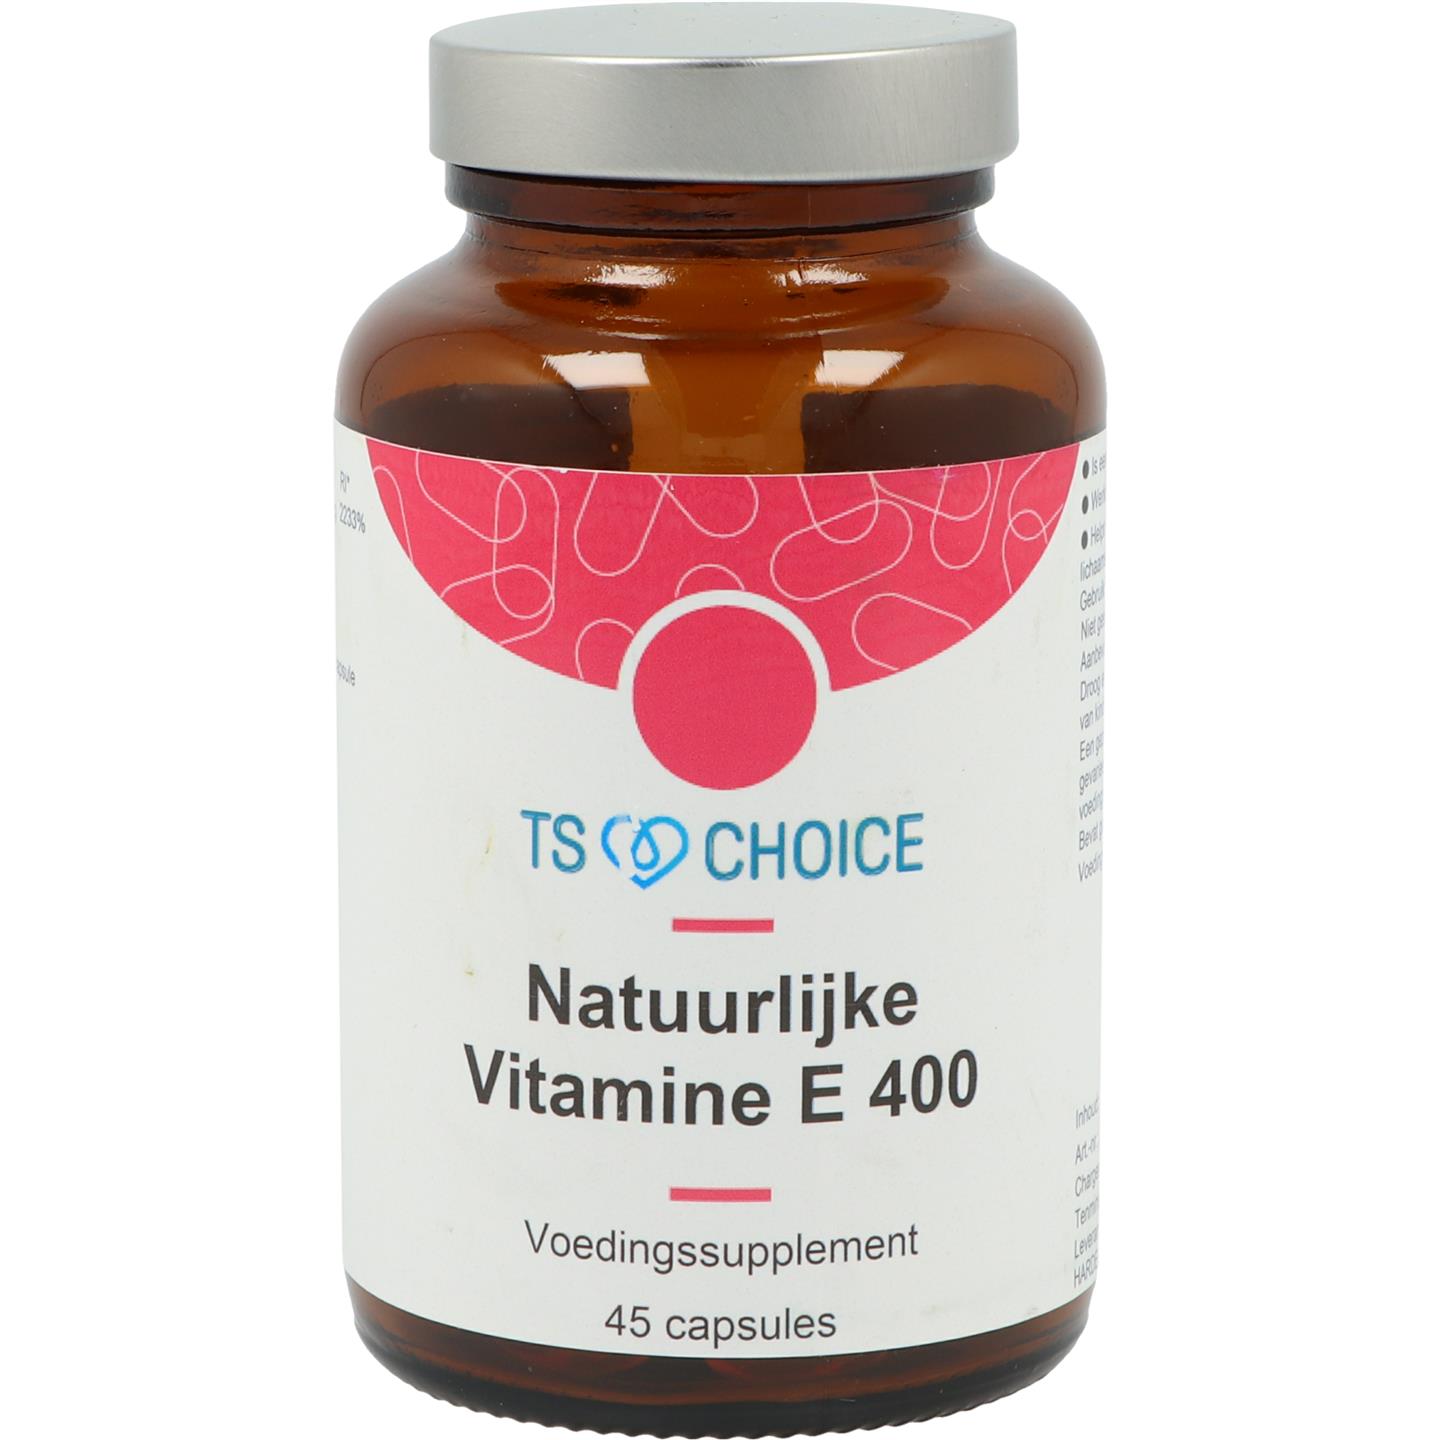 Natuurlijke Vitamine E 400